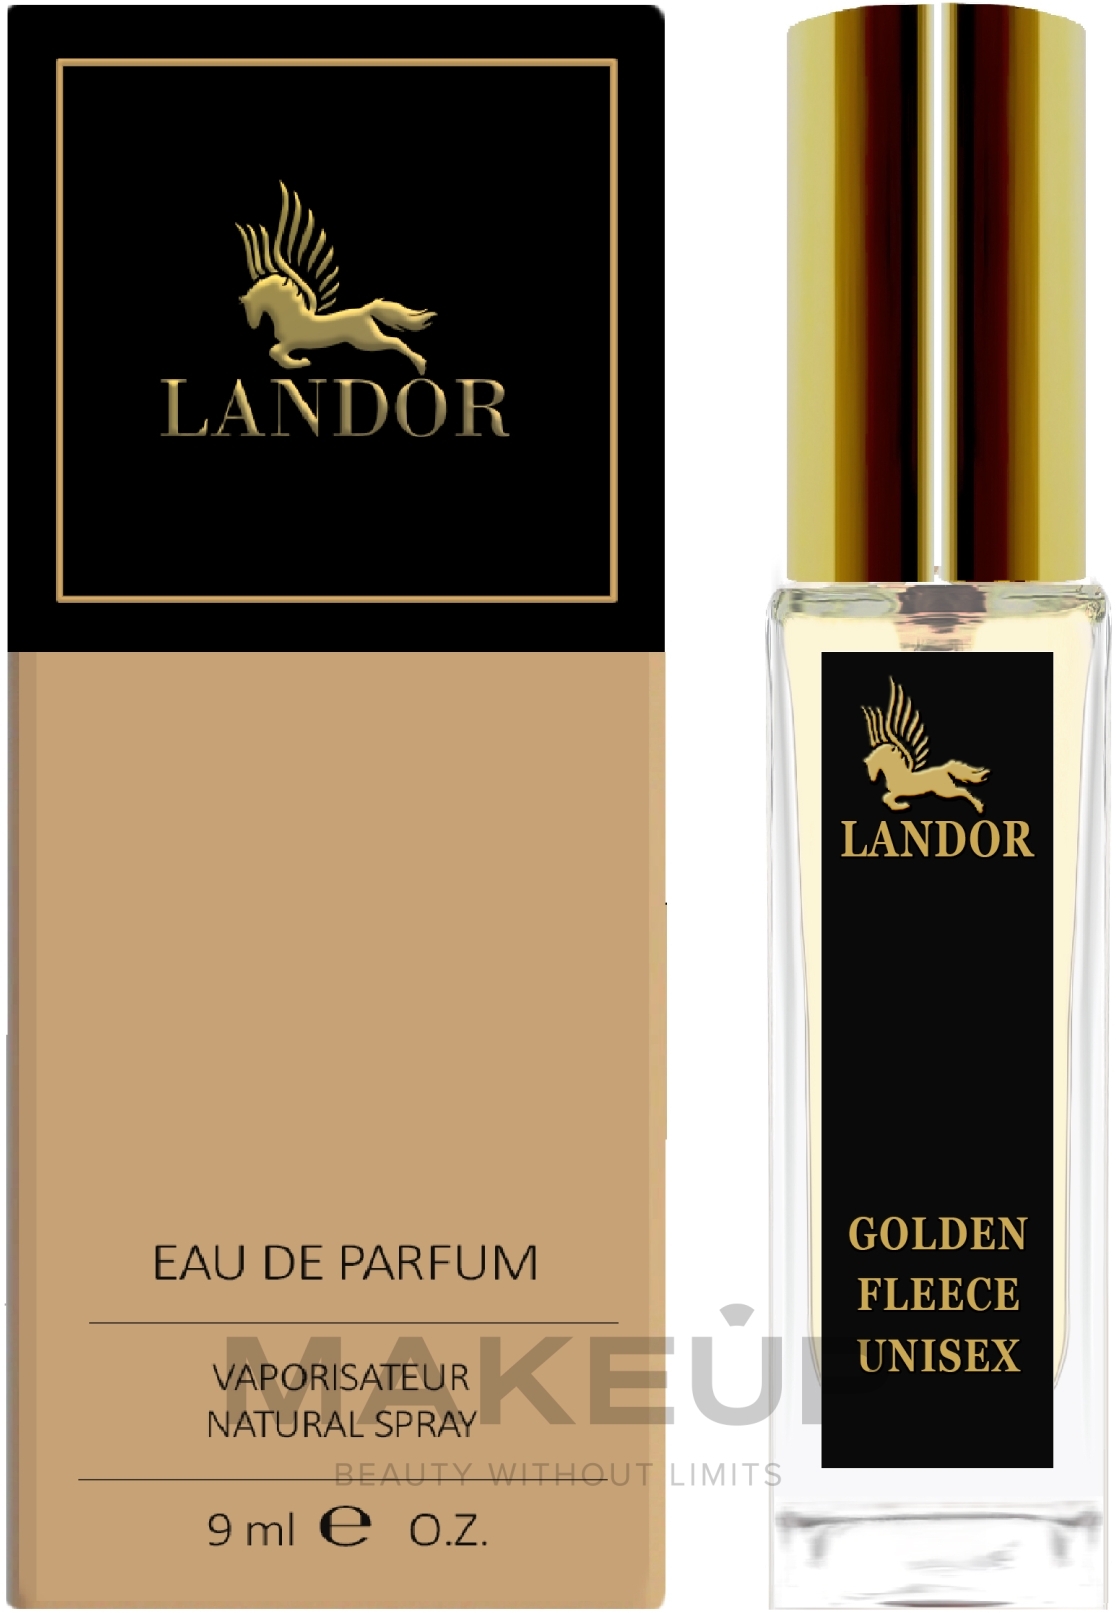 Landor Golden Fleece Unisex - Парфюмированная вода (мини) — фото 9ml